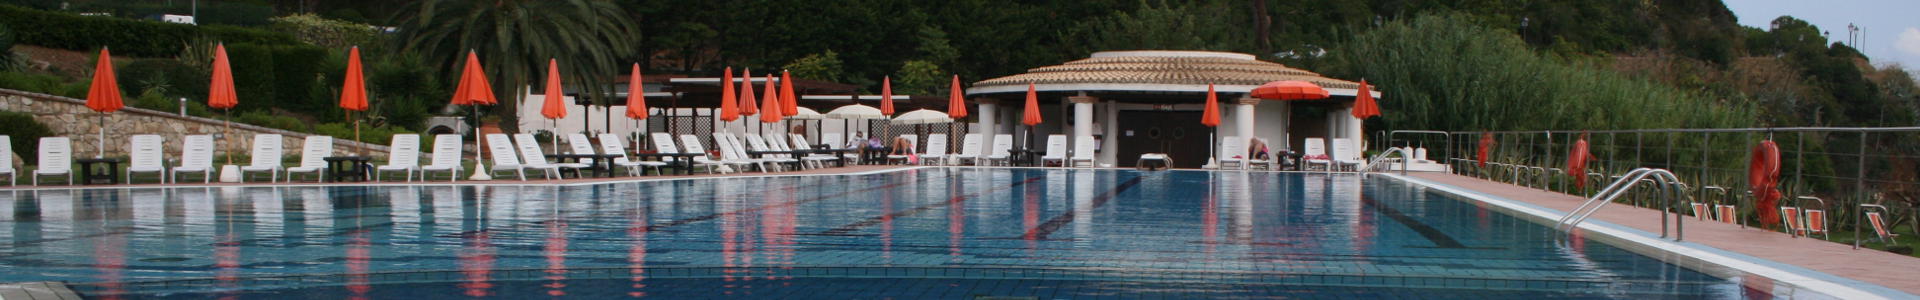 Isola d'Elba: manutenzione e costruzione piscine